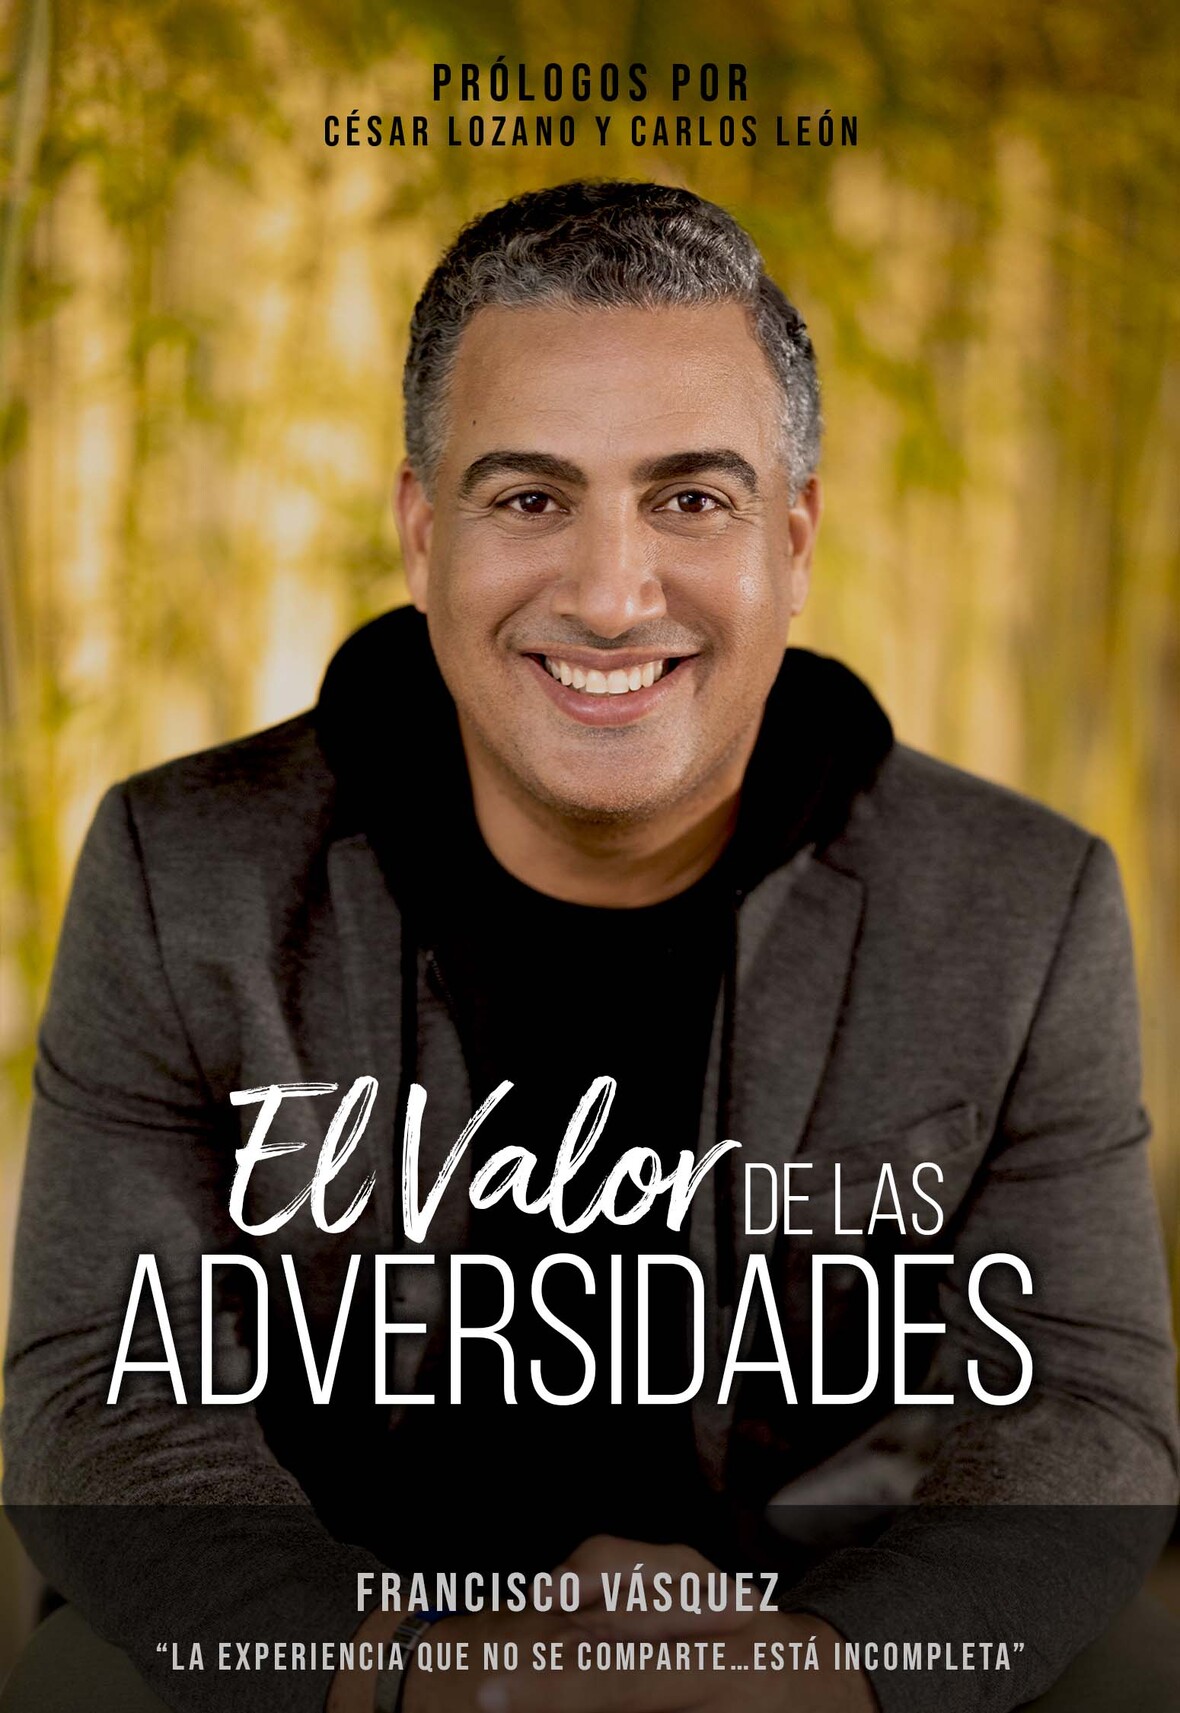 FRANCISCO VÁSQUEZ lanza primer libro “El Valor de las Adversidades”